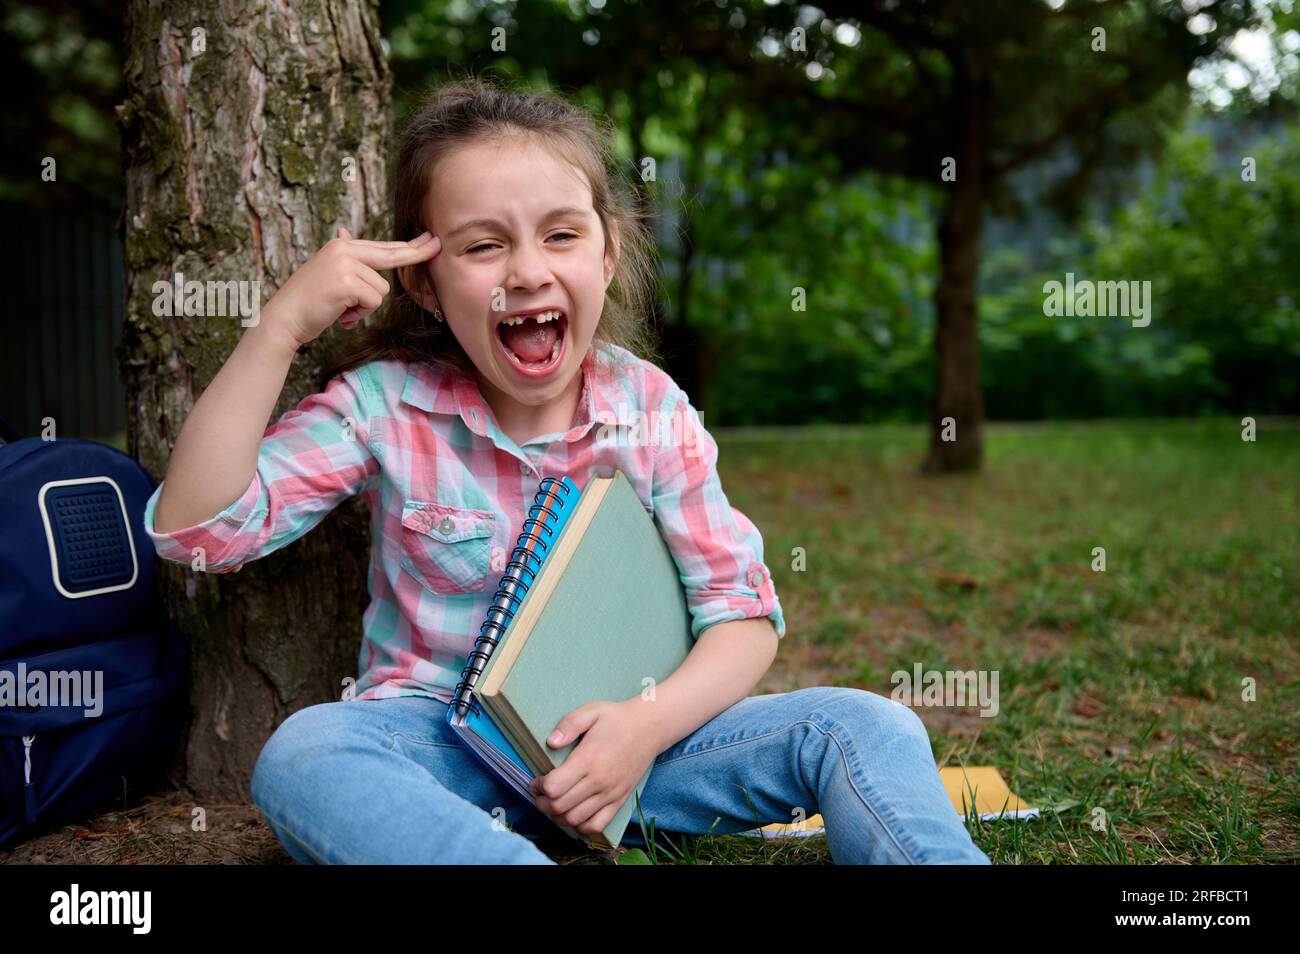 Ein bösartiges kleines Mädchen, das Schulbedarf in der Hand hat, sitzt unter einem Baum im Park, Gesten, zeigt mit dem Finger auf ihren Tempel, grimpert, macht Gesicht Stockfoto